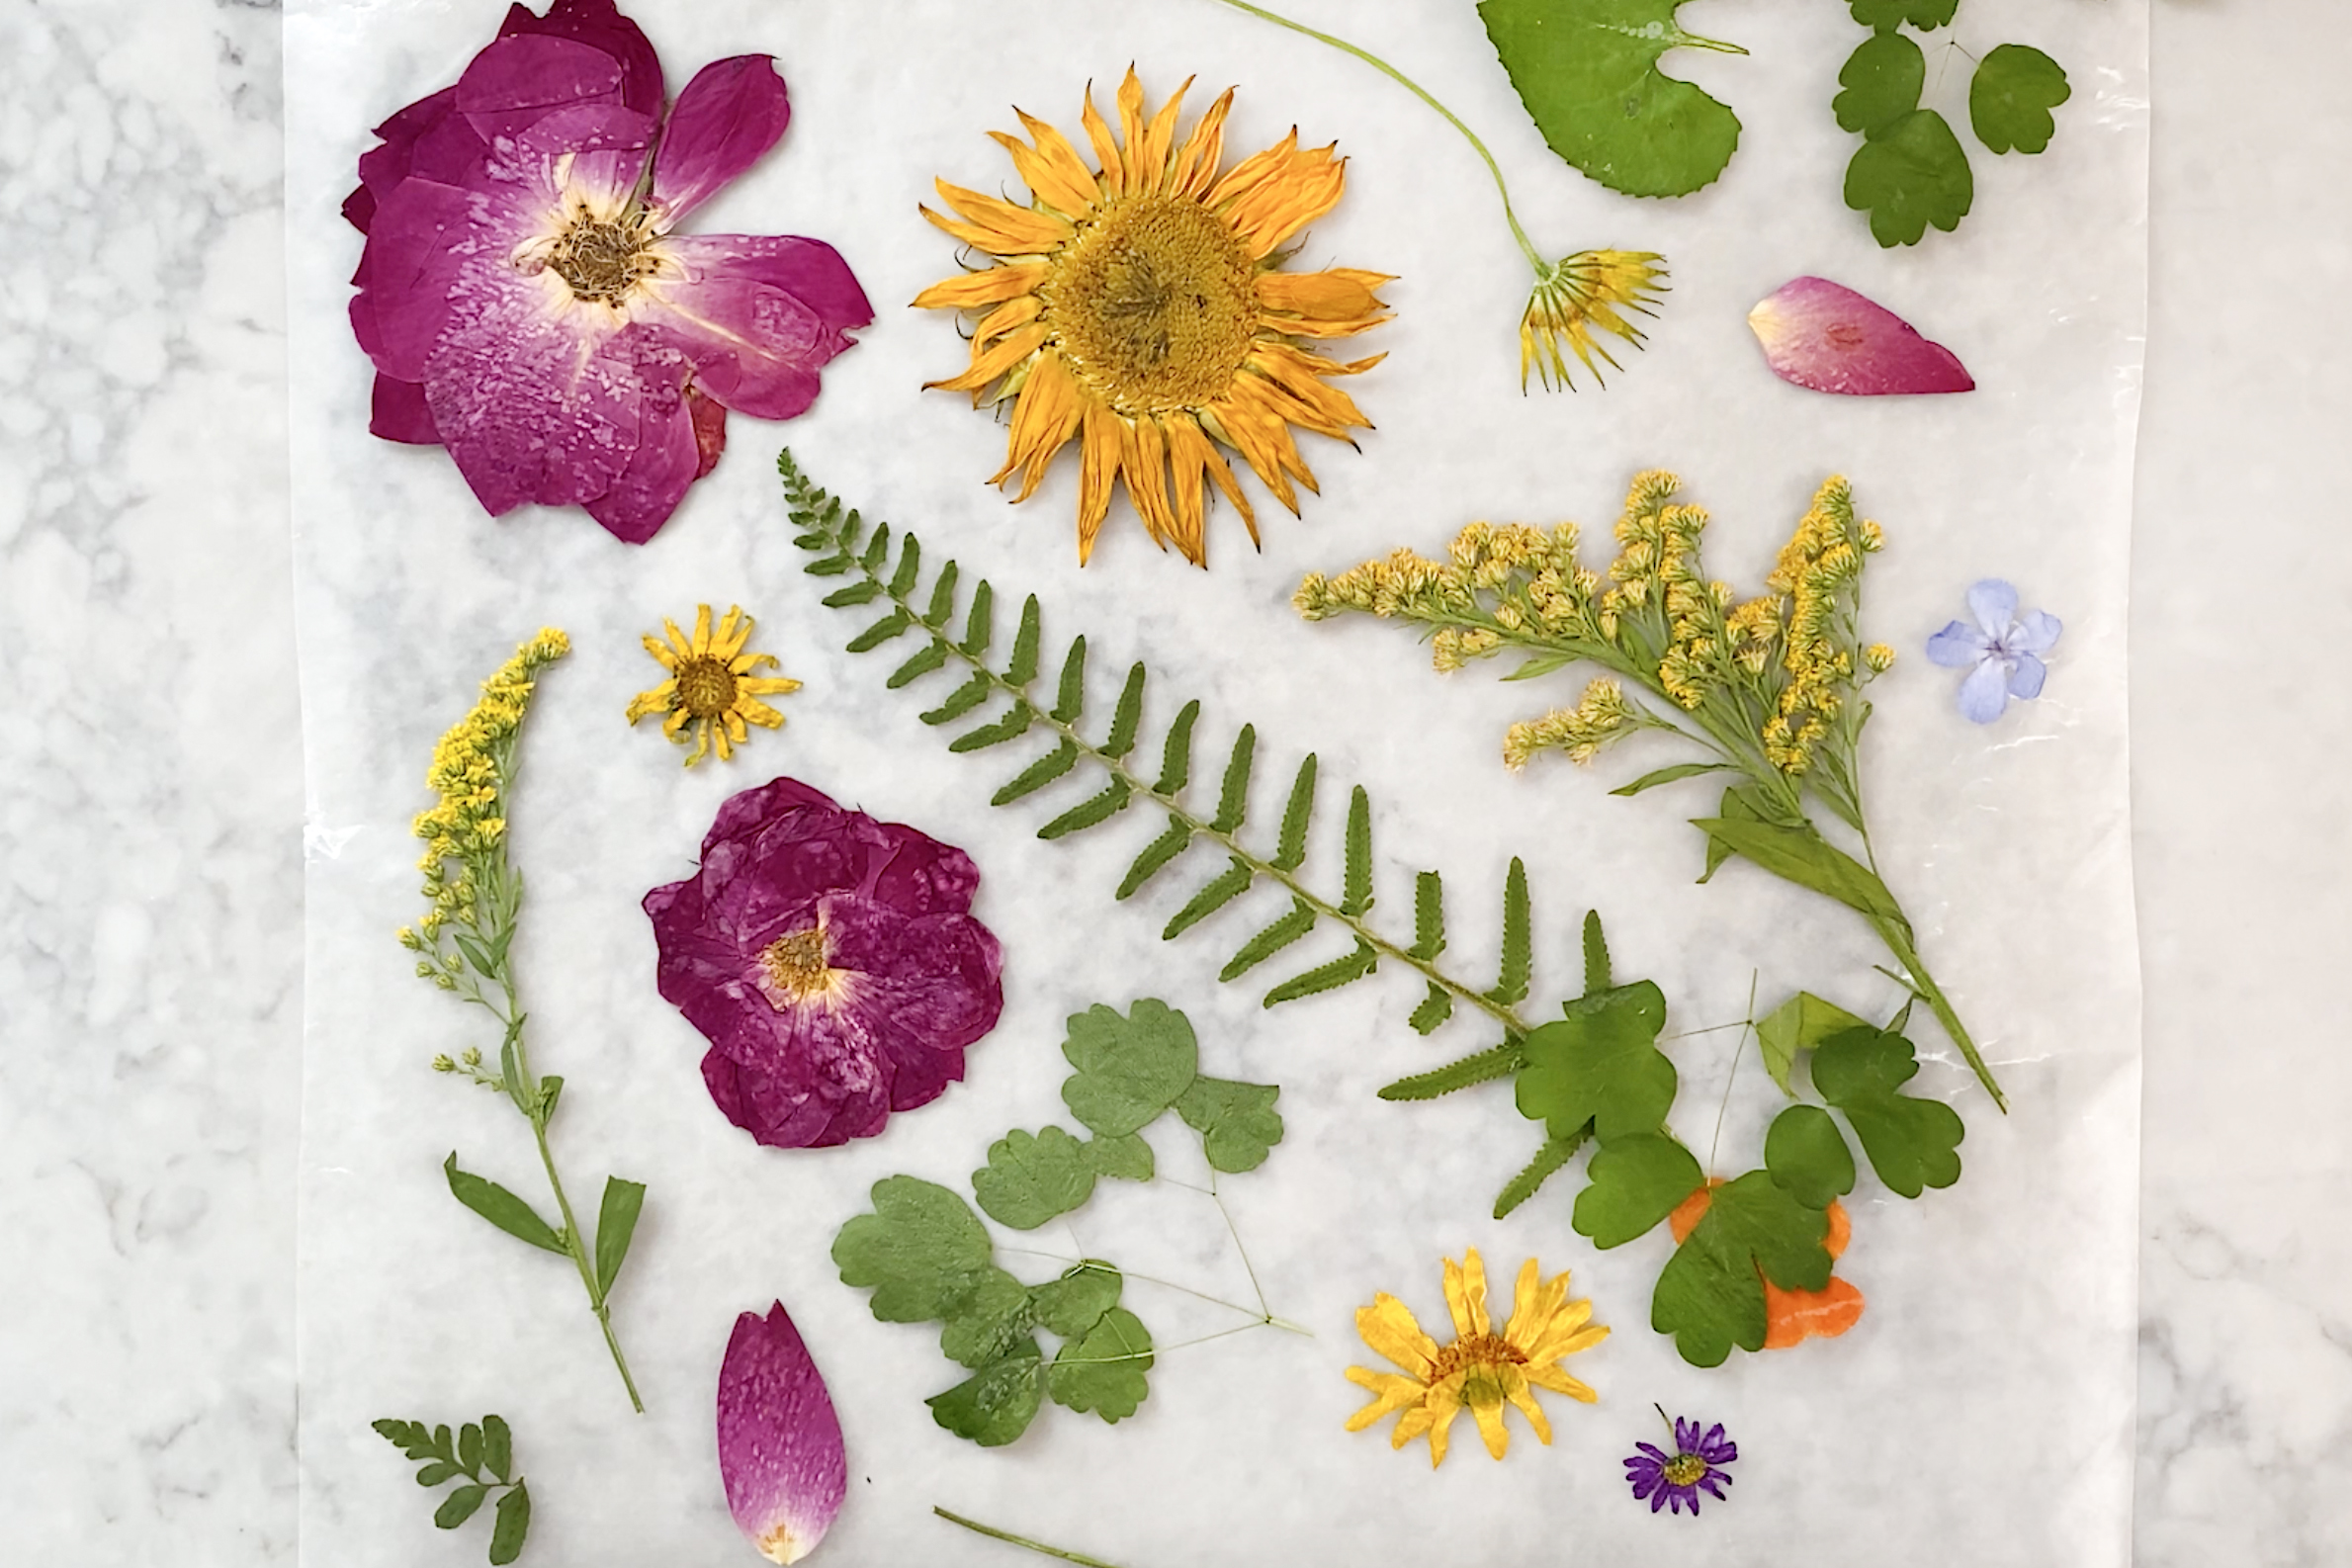 12 Stem Natural Pressed Flower Card Making Floral Craft DIY Wedding Decor 